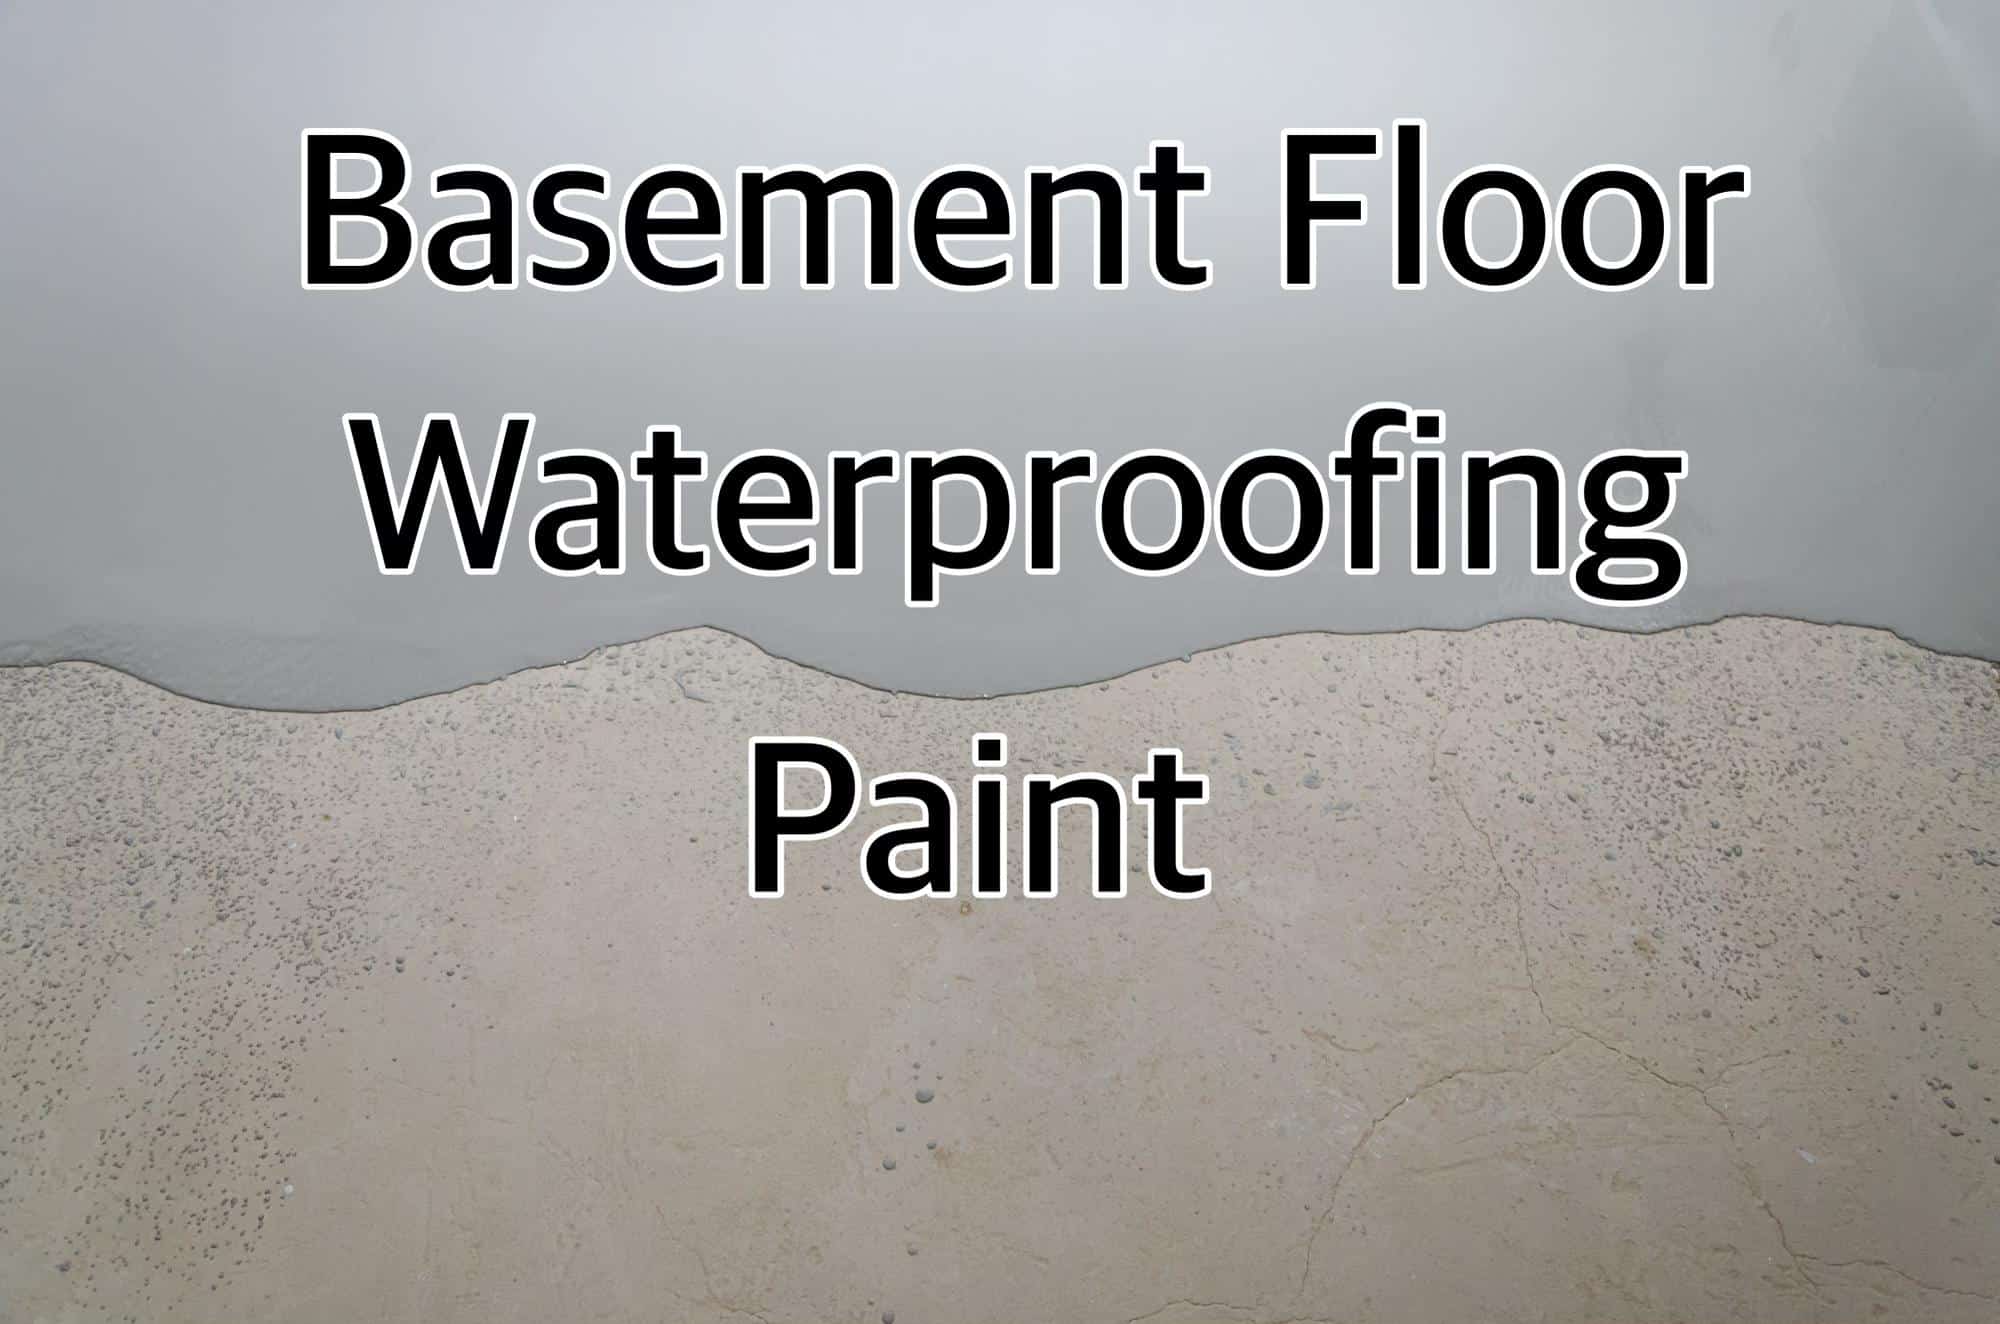 Basement Floor Waterproofing Paint